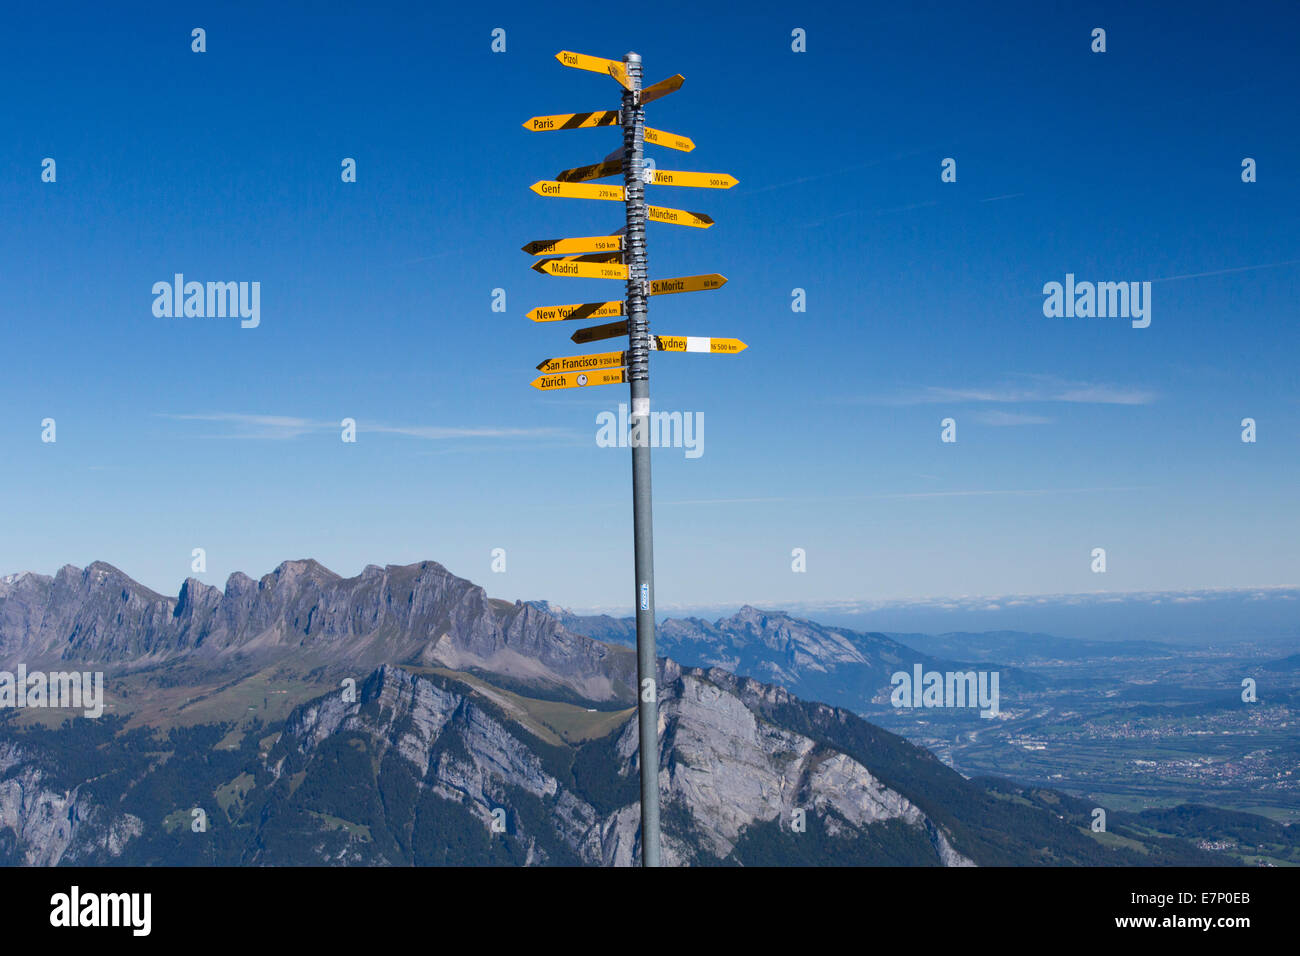 El valle del Rin, signpost, área de Pizol, montaña, montañas, SG, en el cantón de San Gallen, sendero, signpost, Suiza, Europa Foto de stock